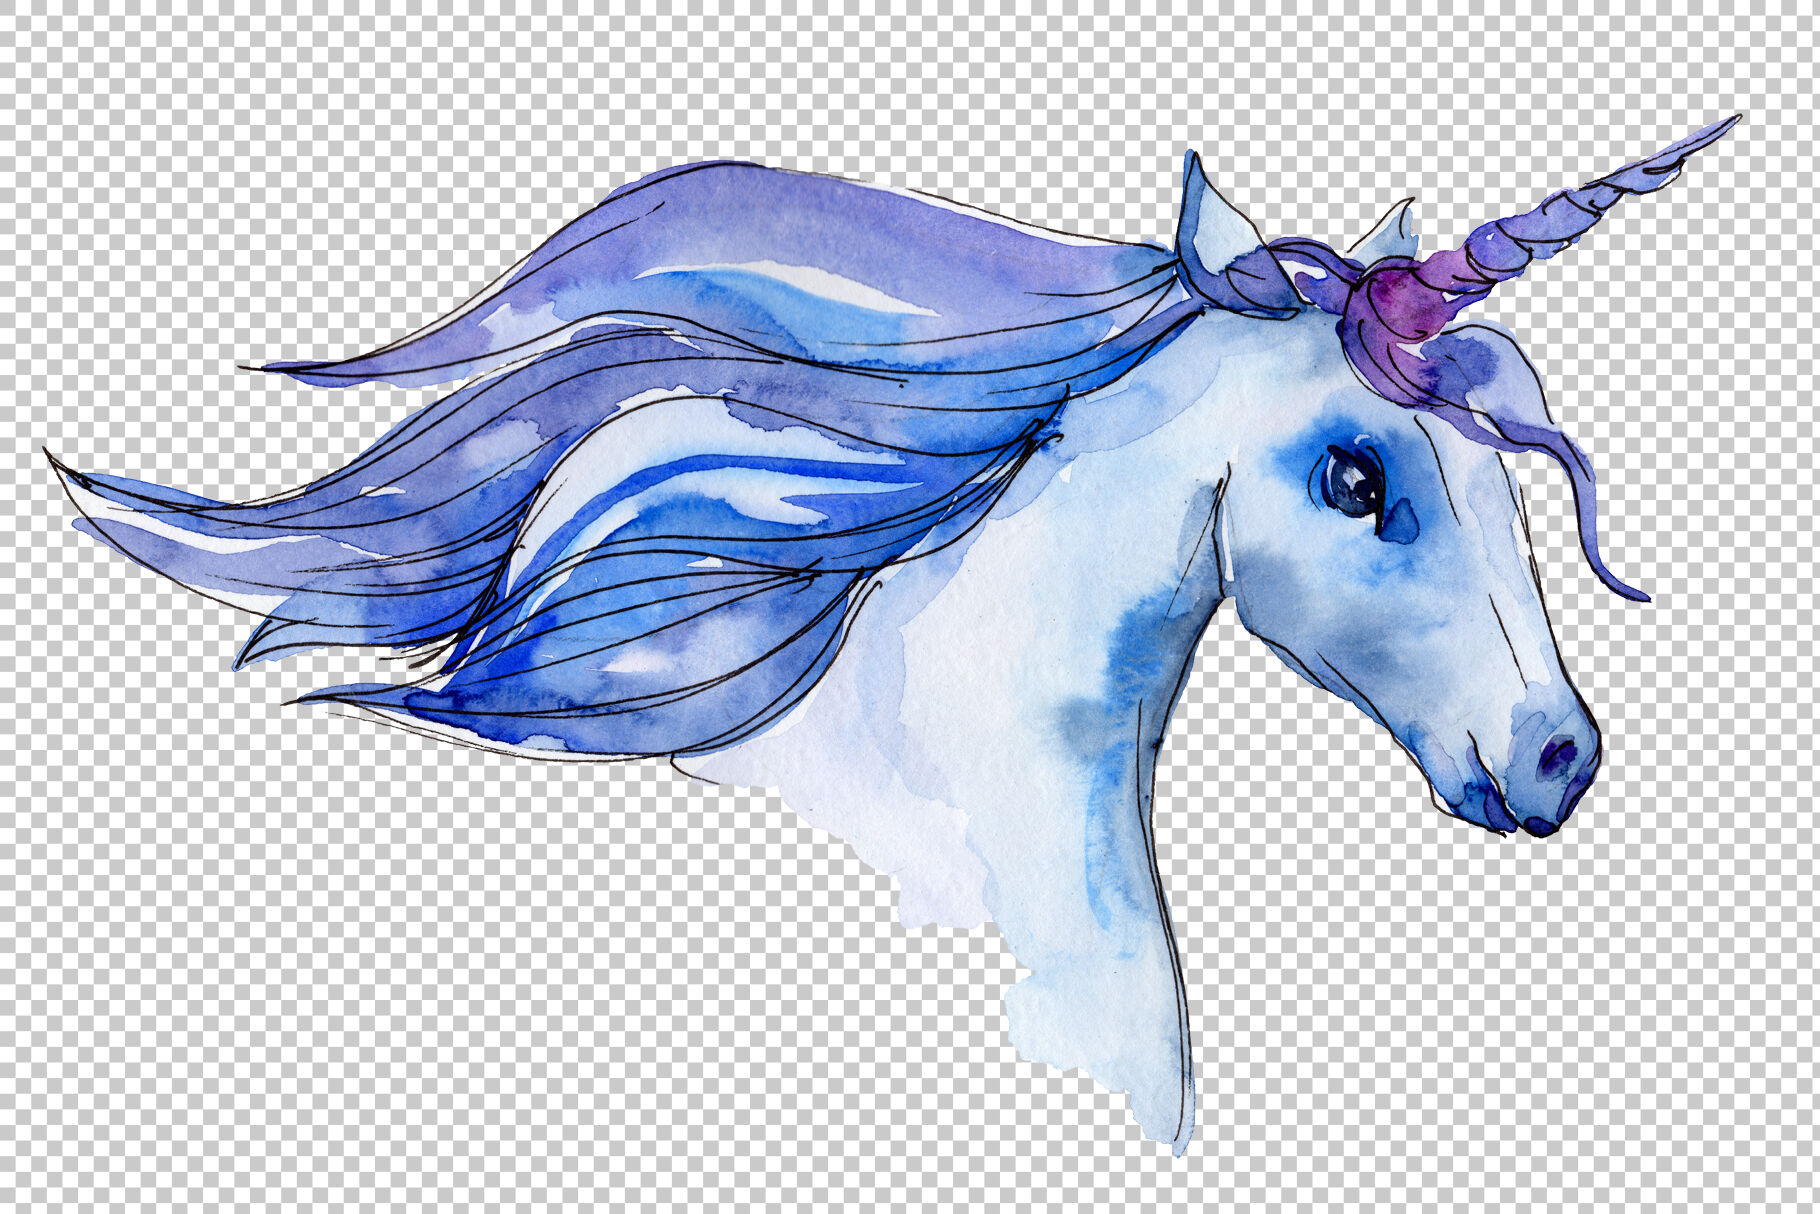 Watercolor unicorn clipart.